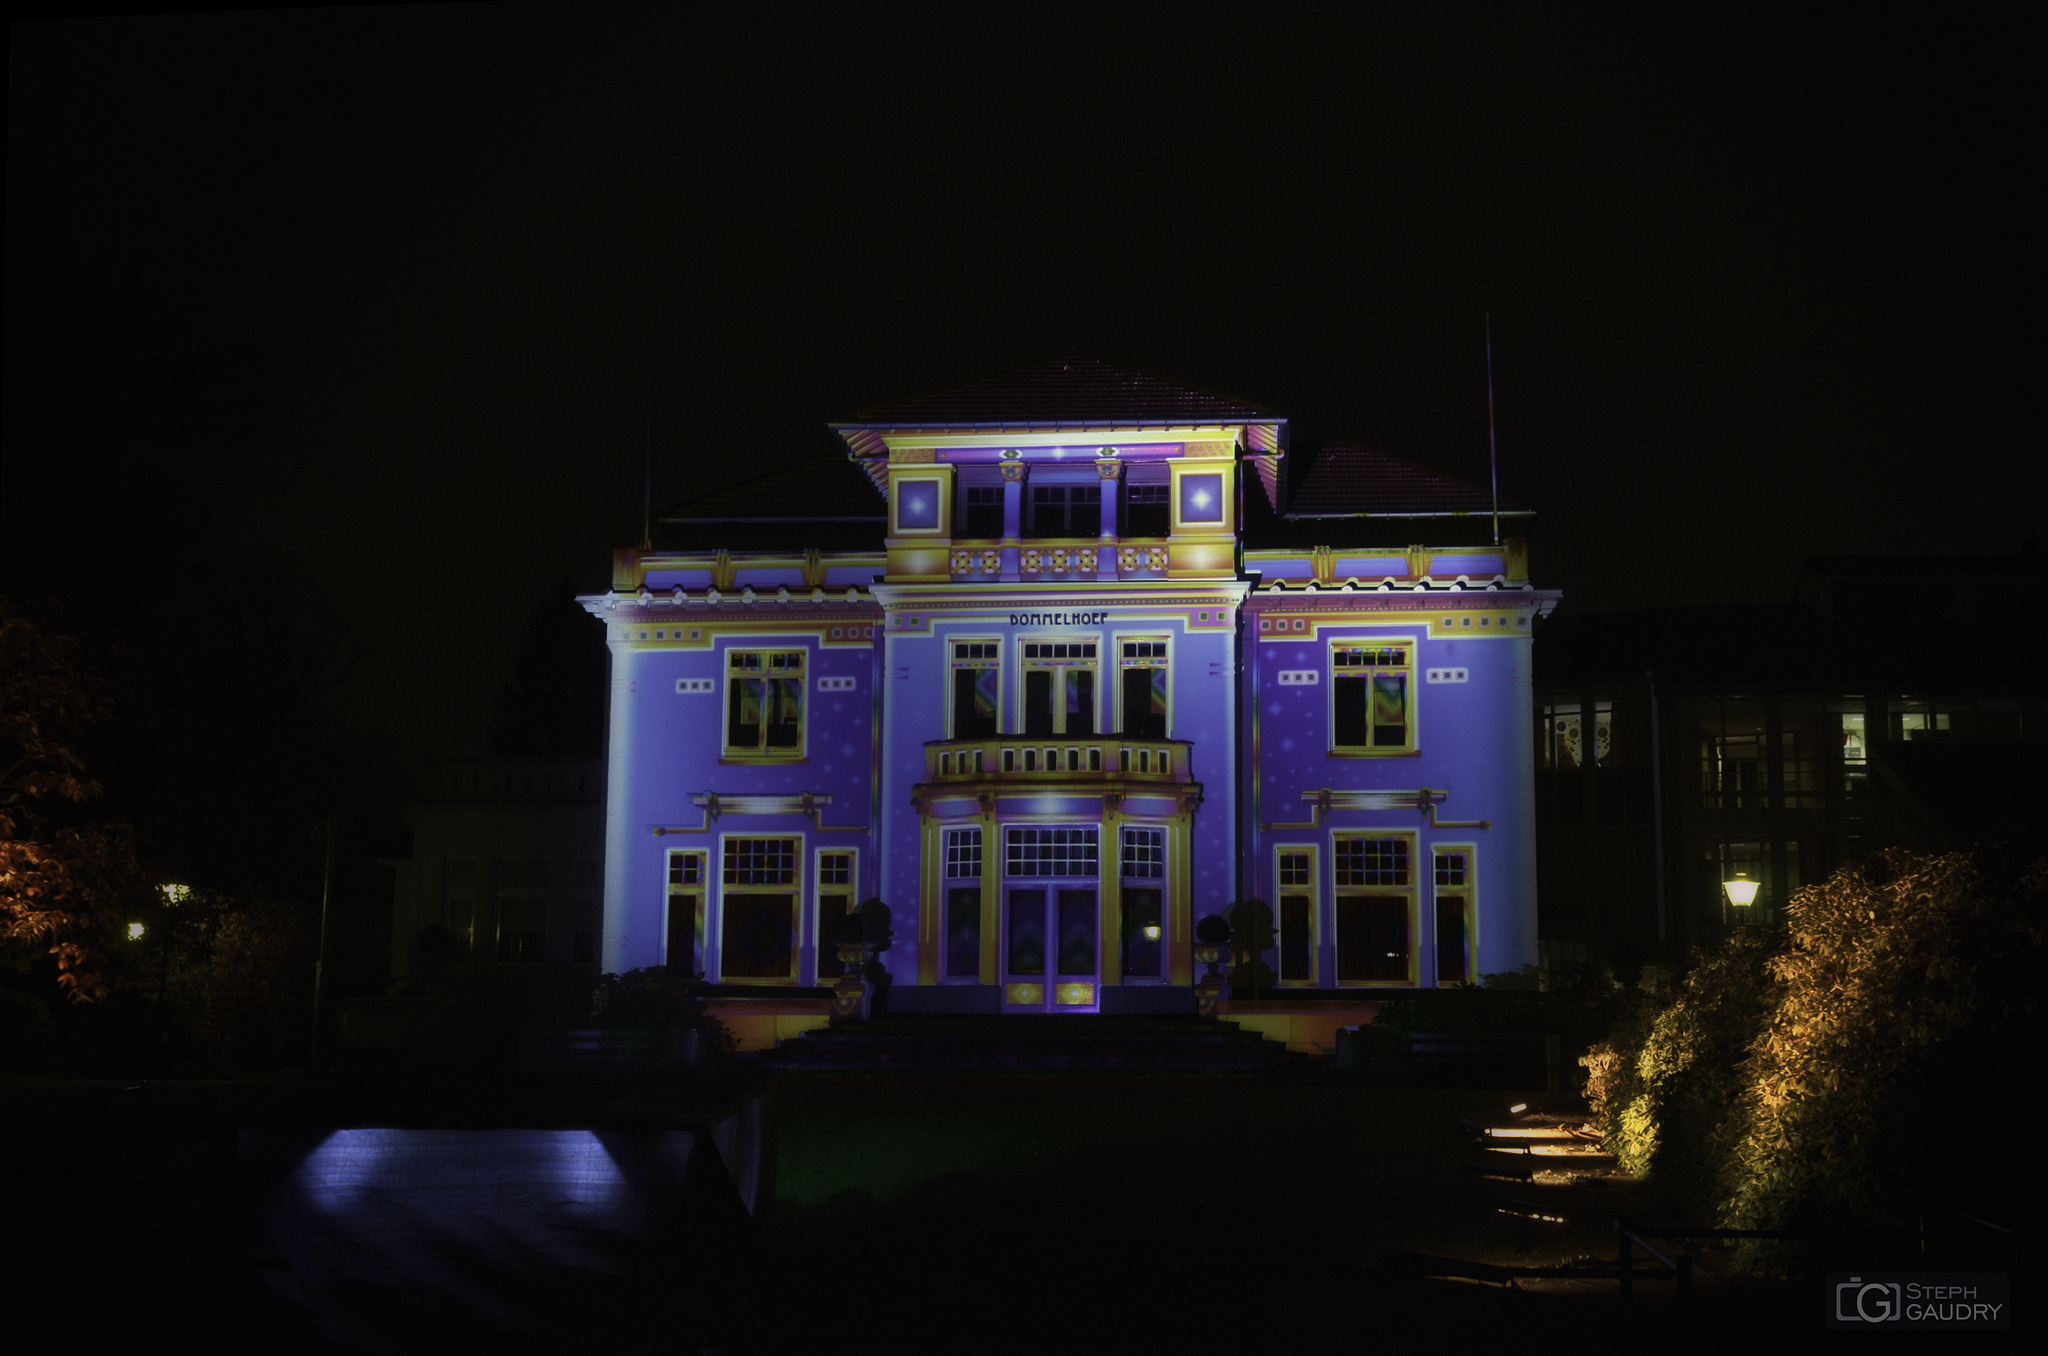 Eindhoven glow 2013 - CHROMOLITHE (v1) [Klicken Sie hier, um die Diashow zu starten]